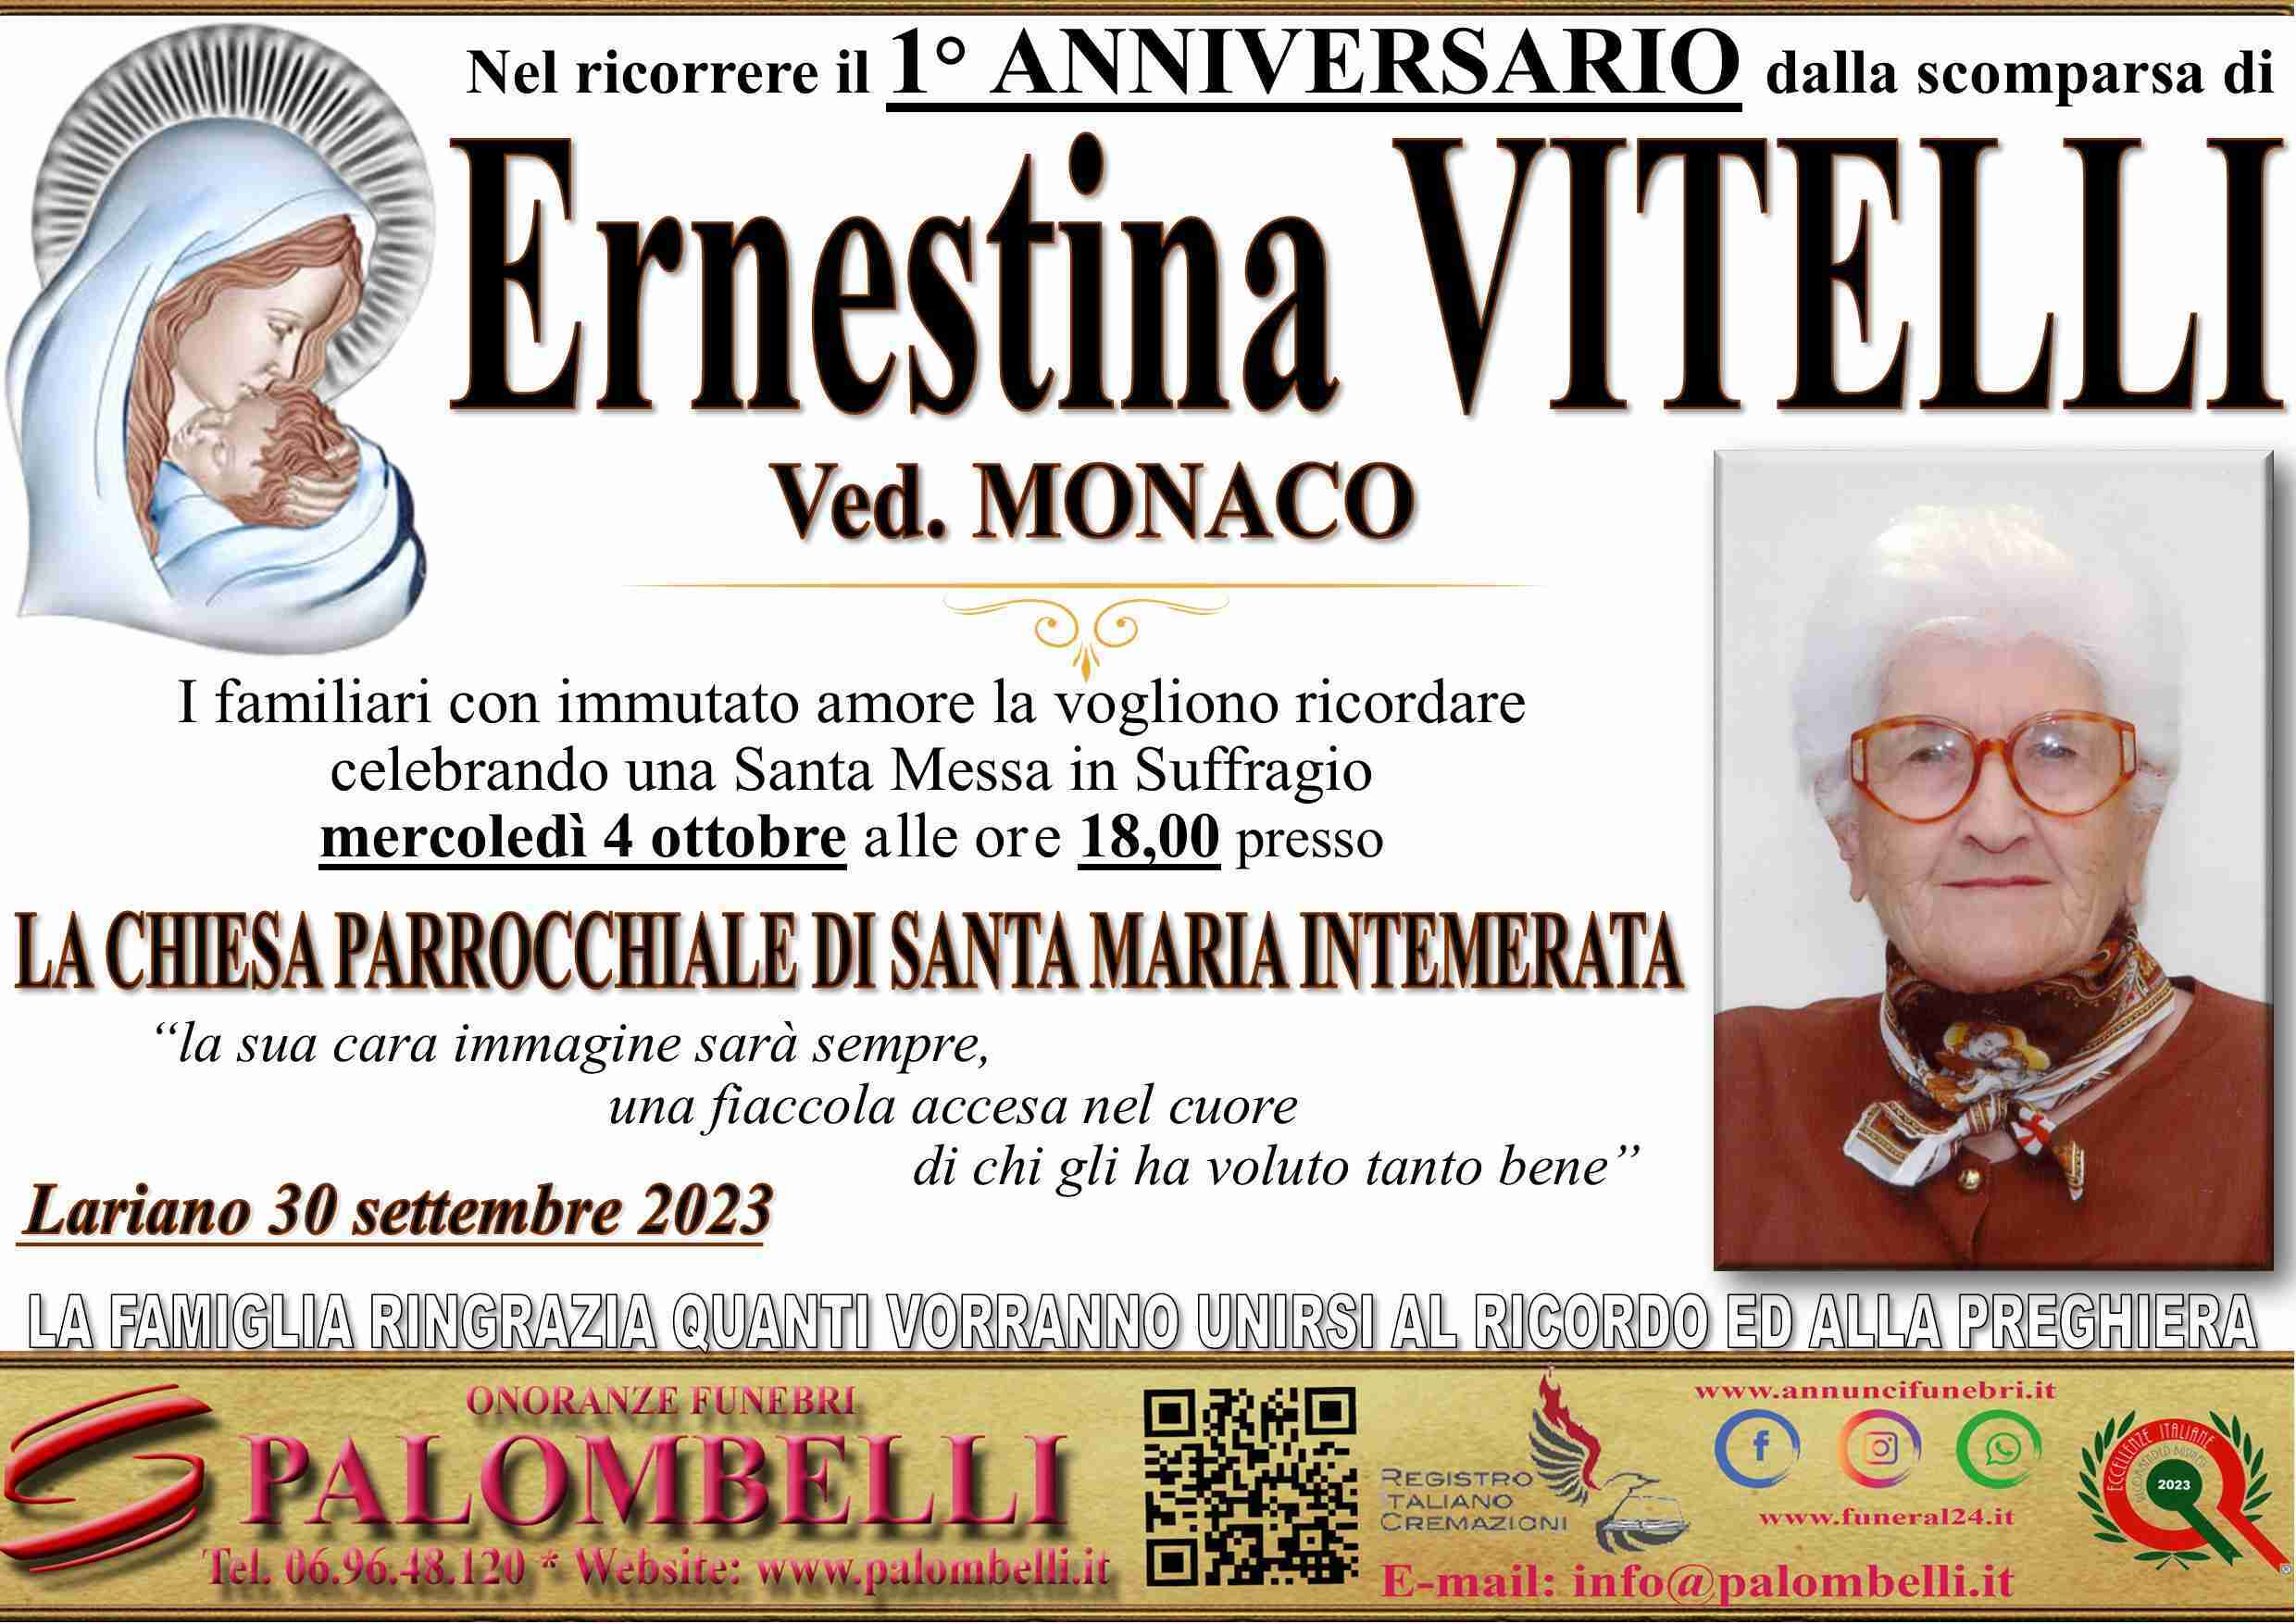 Ernestina Vitelli